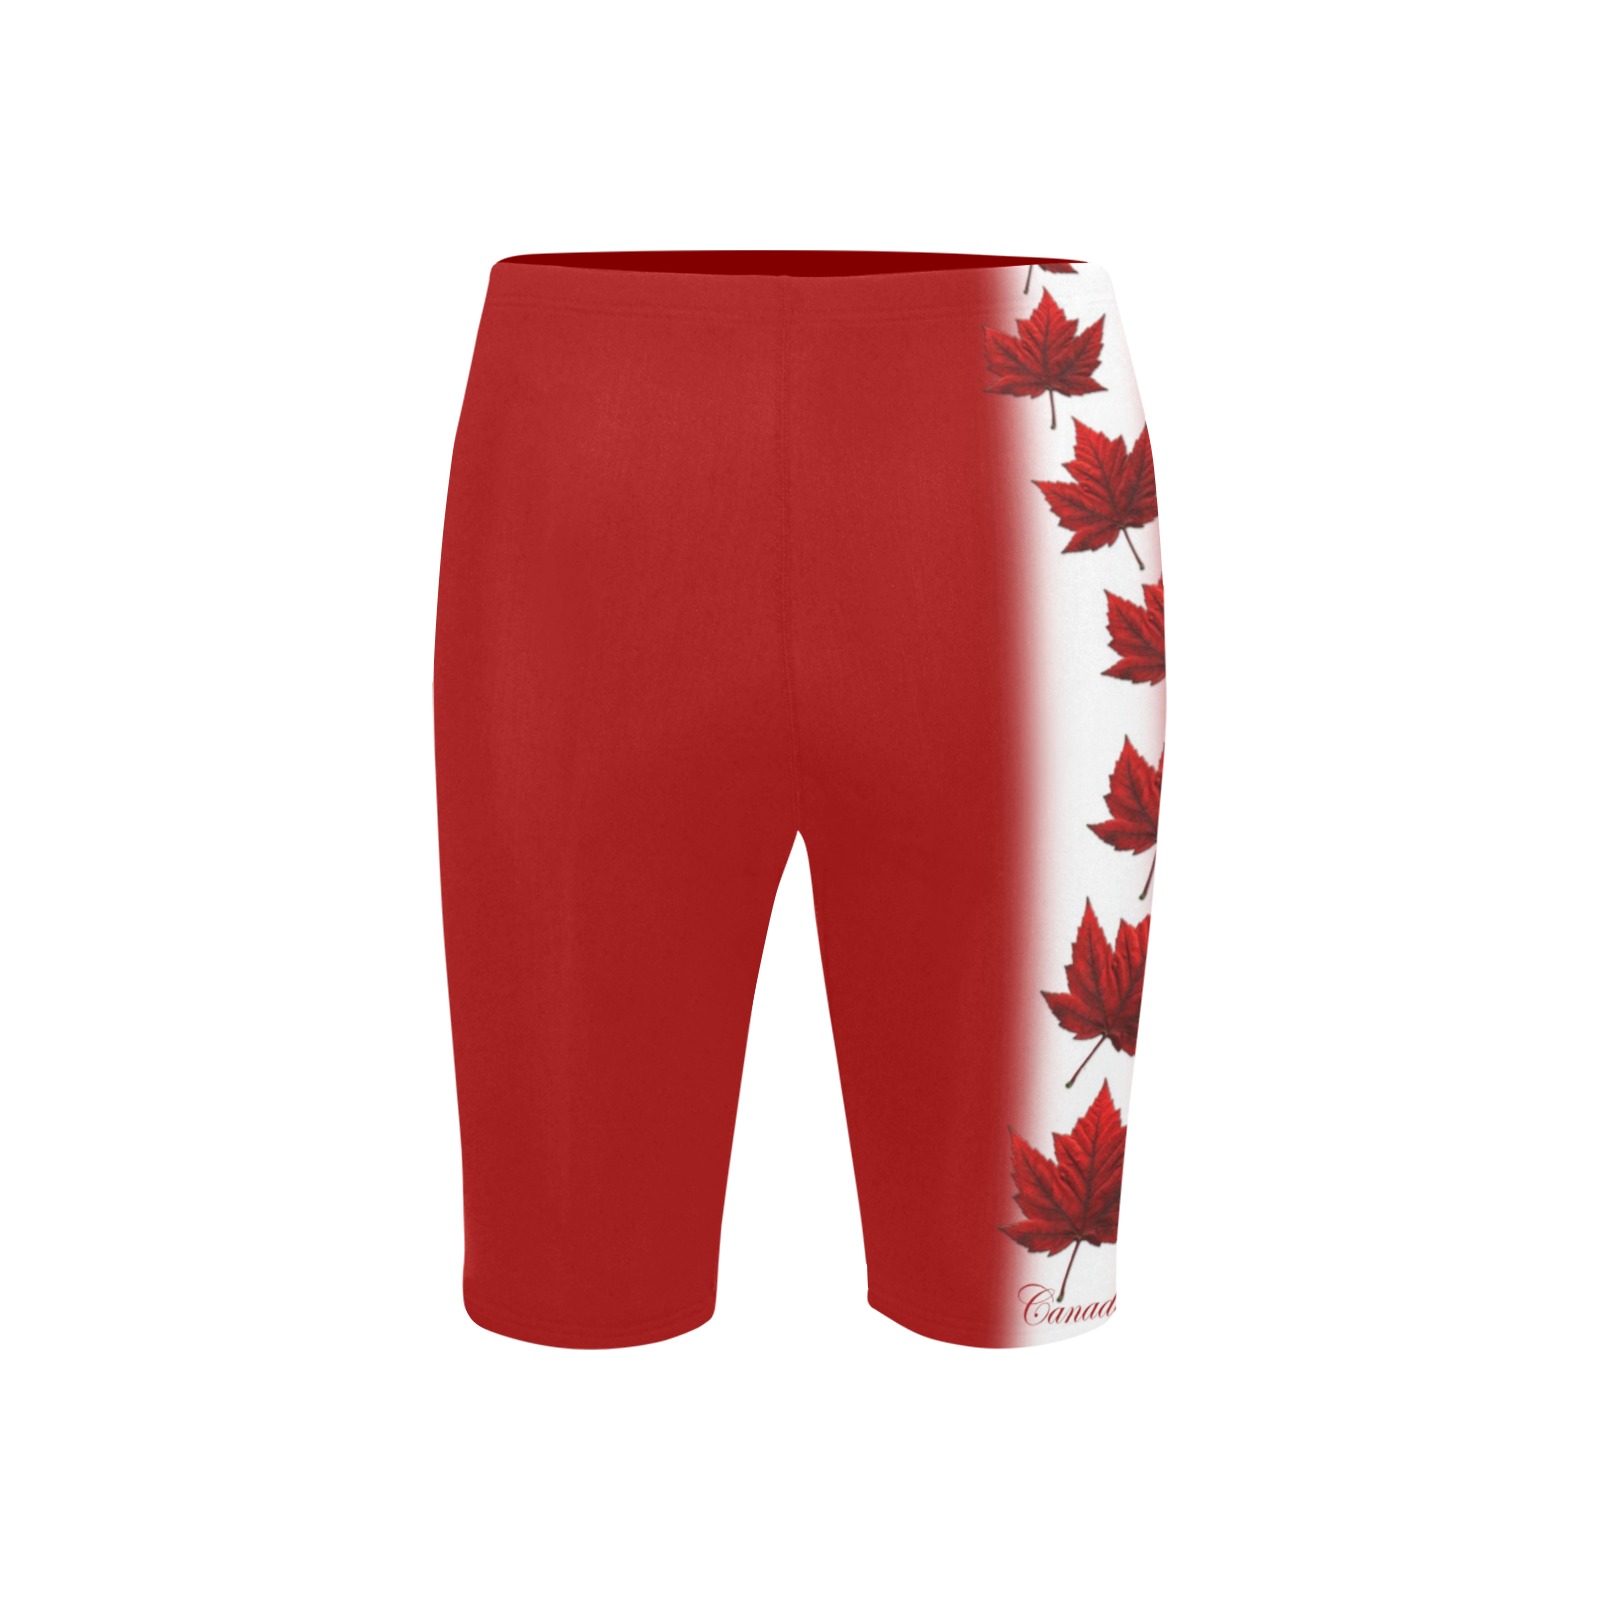 Canada Swim Shorts Men's Knee Length Swimming Trunks (Model L58)